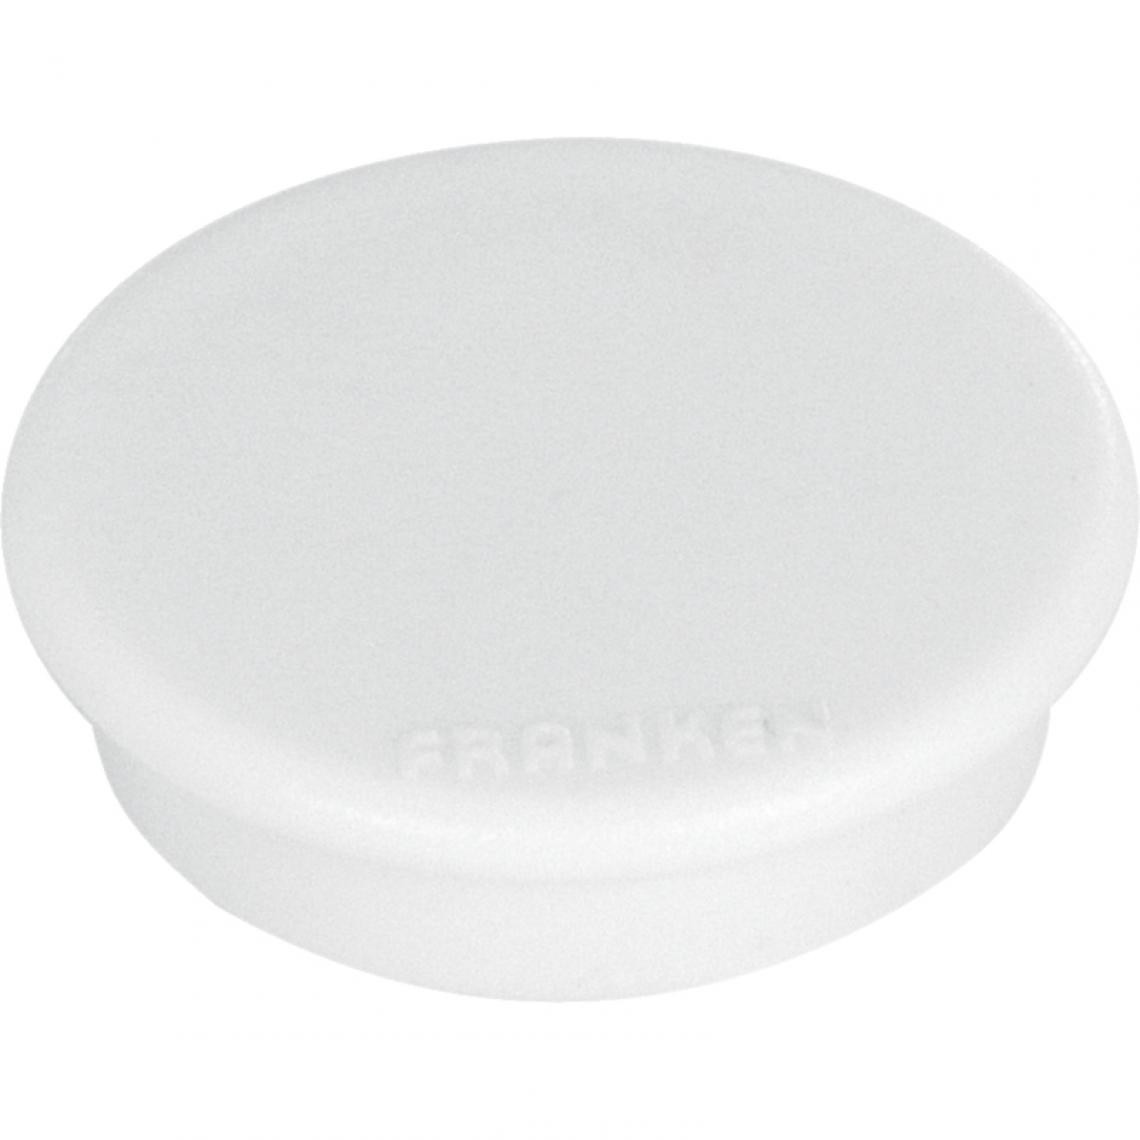 Franken - FRANKEN Aimant de fixation, Force adhésive: 2.500 g, blanc () - Visserie